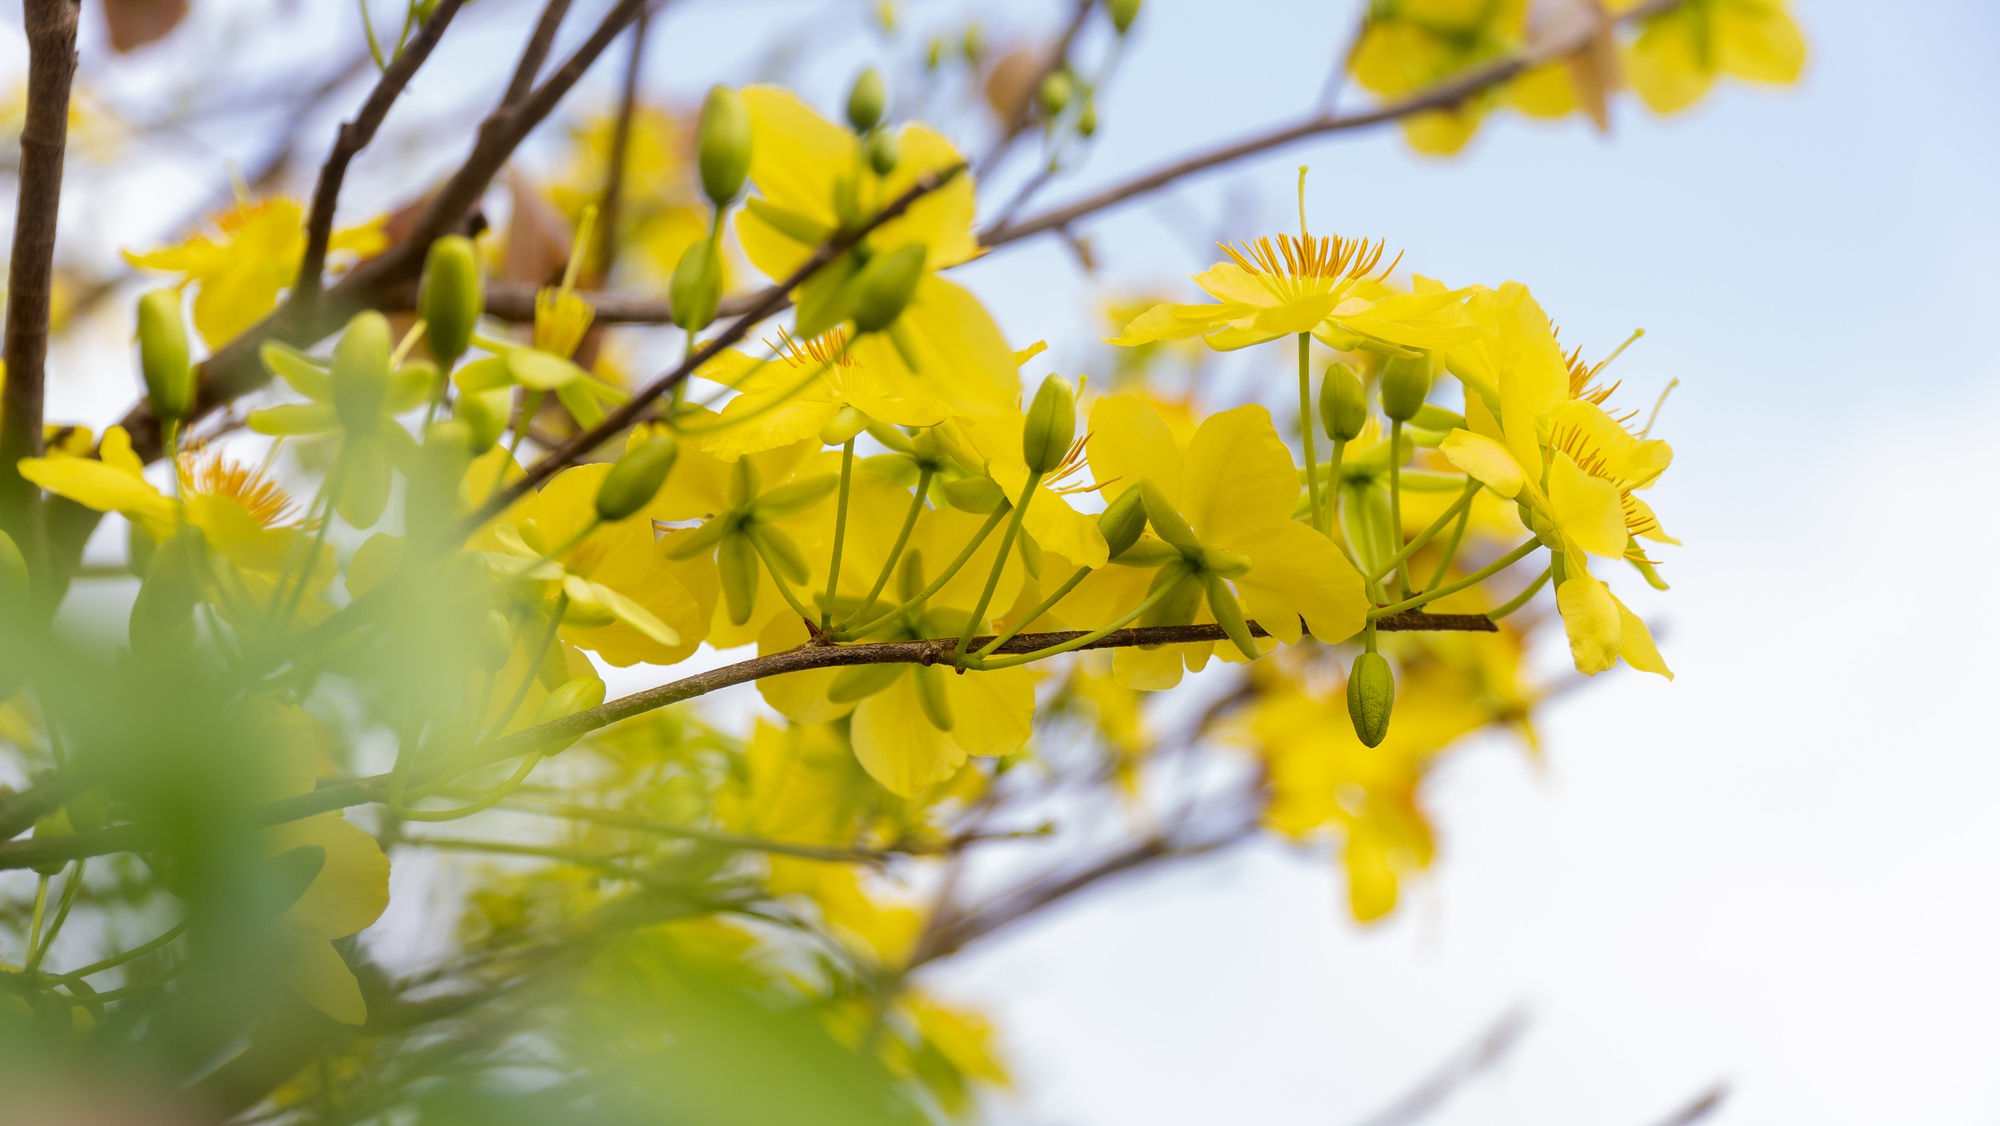 Hơn 1.000 cây mai vàng làm nên con đường hoa đẹp mê mẩn ở một thị trấn của Bà Rịa-Vũng Tàu- Ảnh 4.